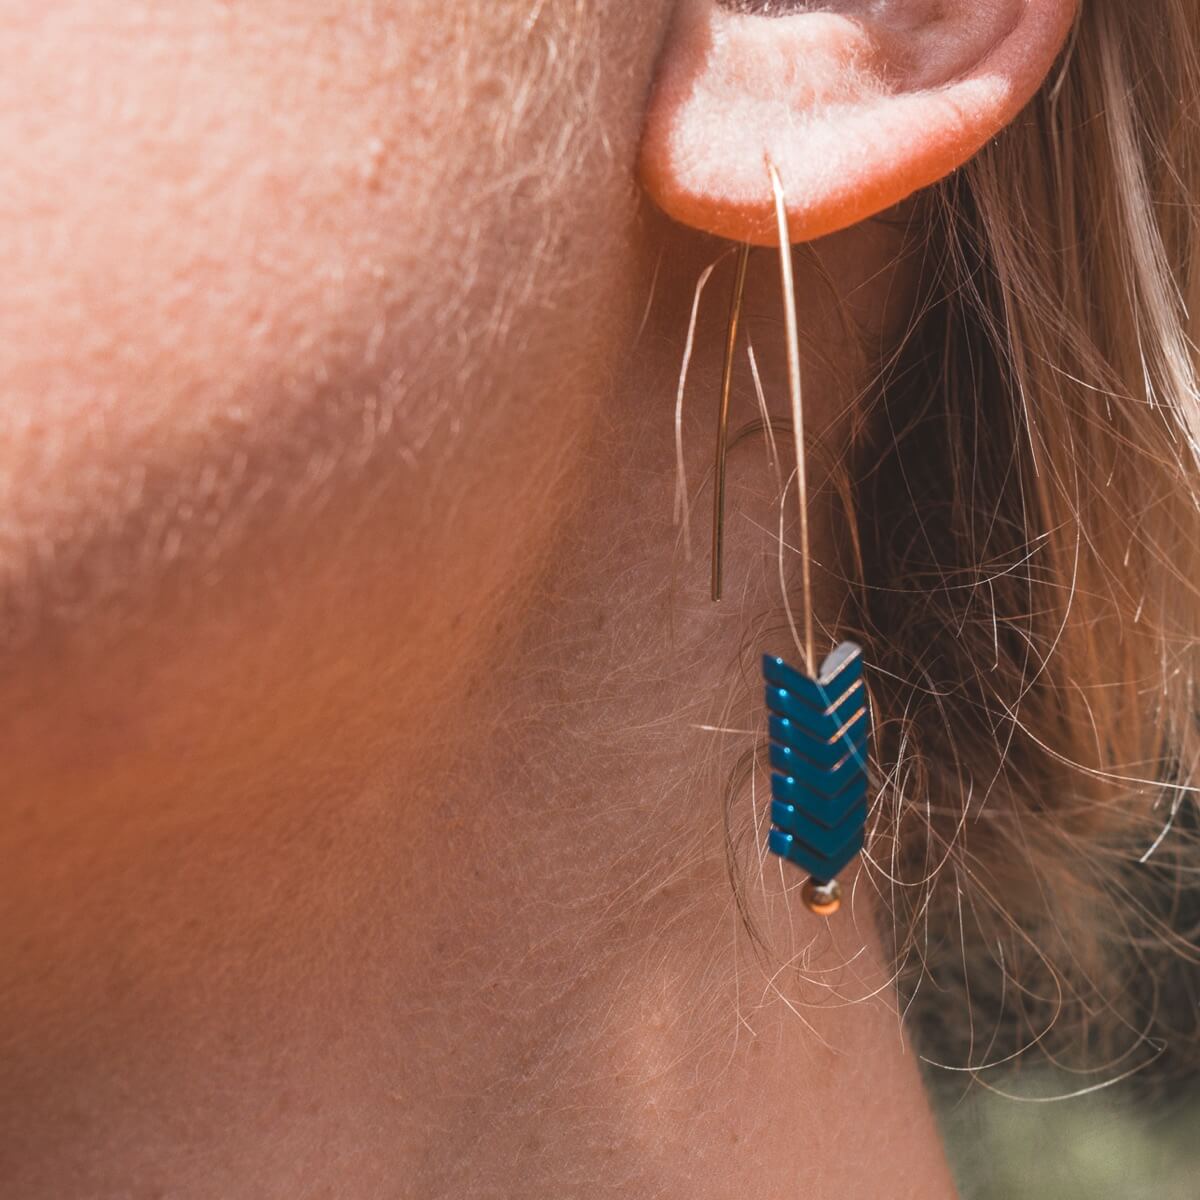 Double Piercing Earring Second Hole Earrings Thread Earrings Pull Through  Earrings - Etsy | Earrings, Etsy earrings, Ear jewelry